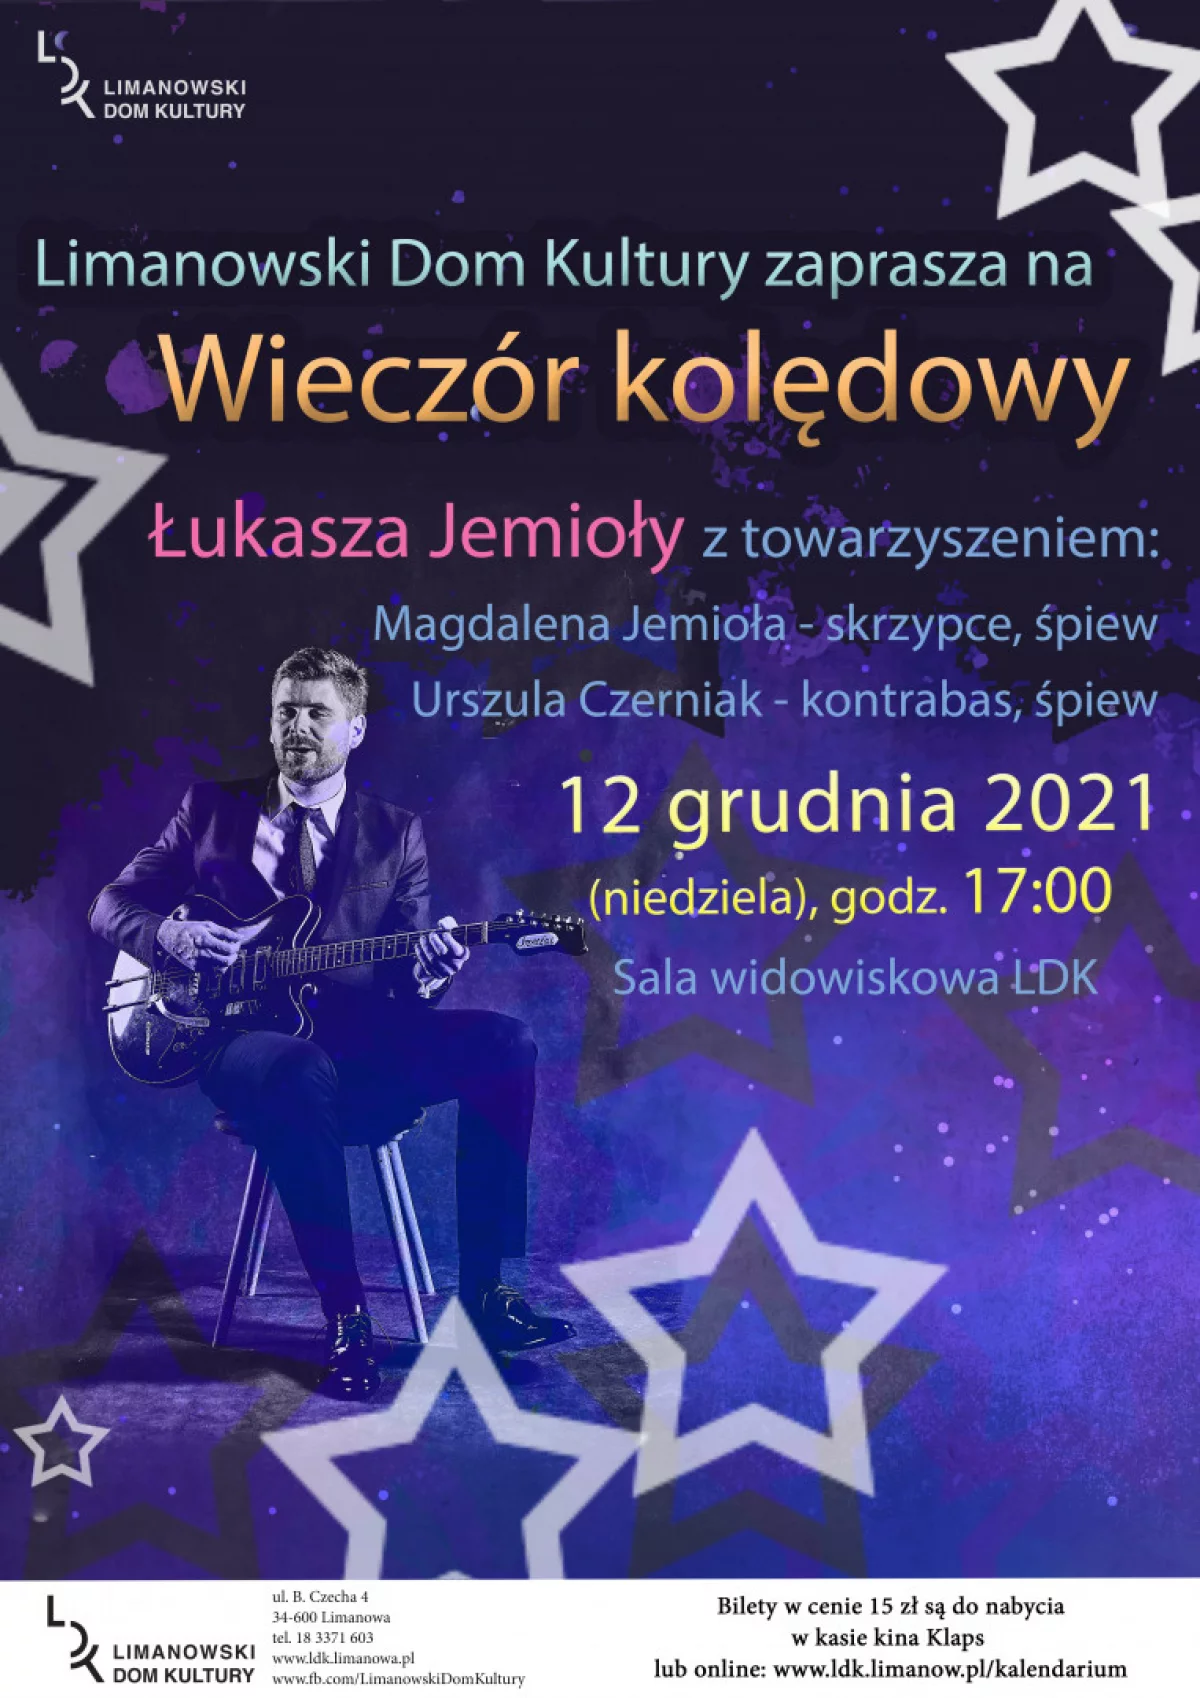  Wieczór kolęd w LDK - zapraszamy na świąteczny koncert Łukasza Jemioły